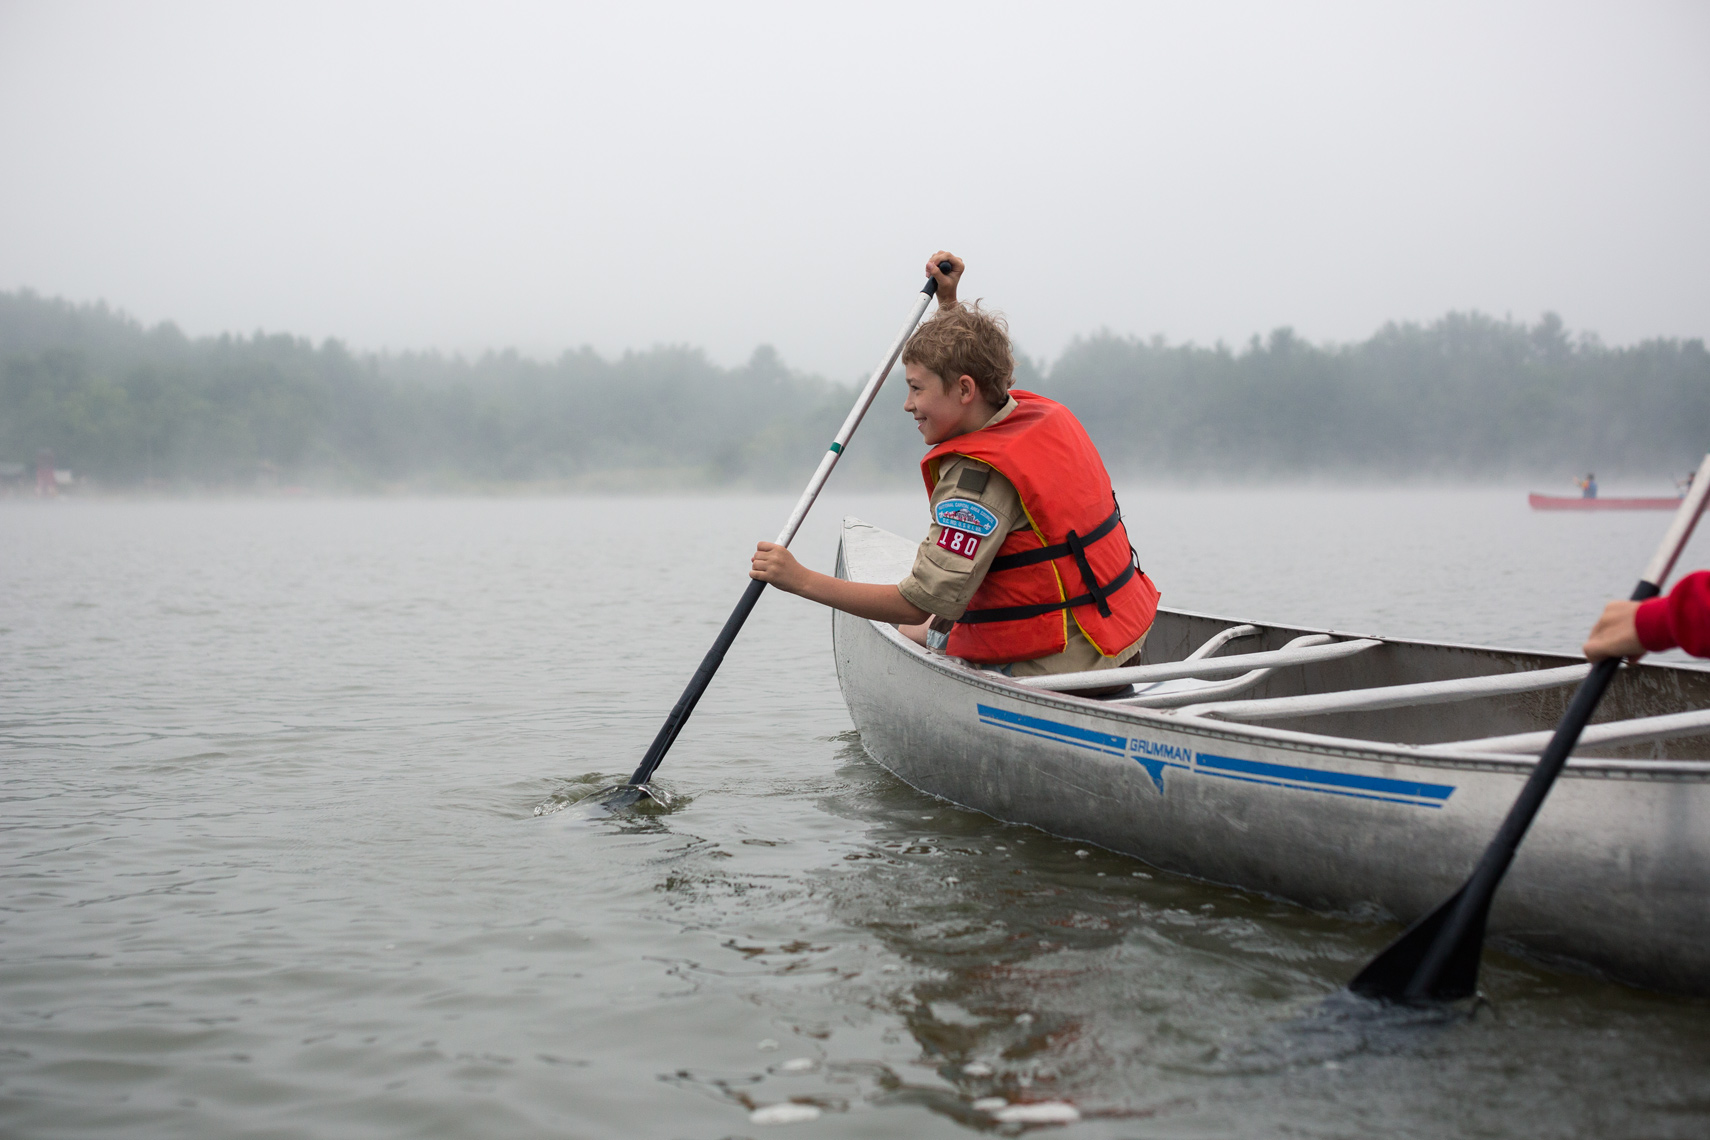 boy scout paddling canoe on lake, washington dc photojournalism